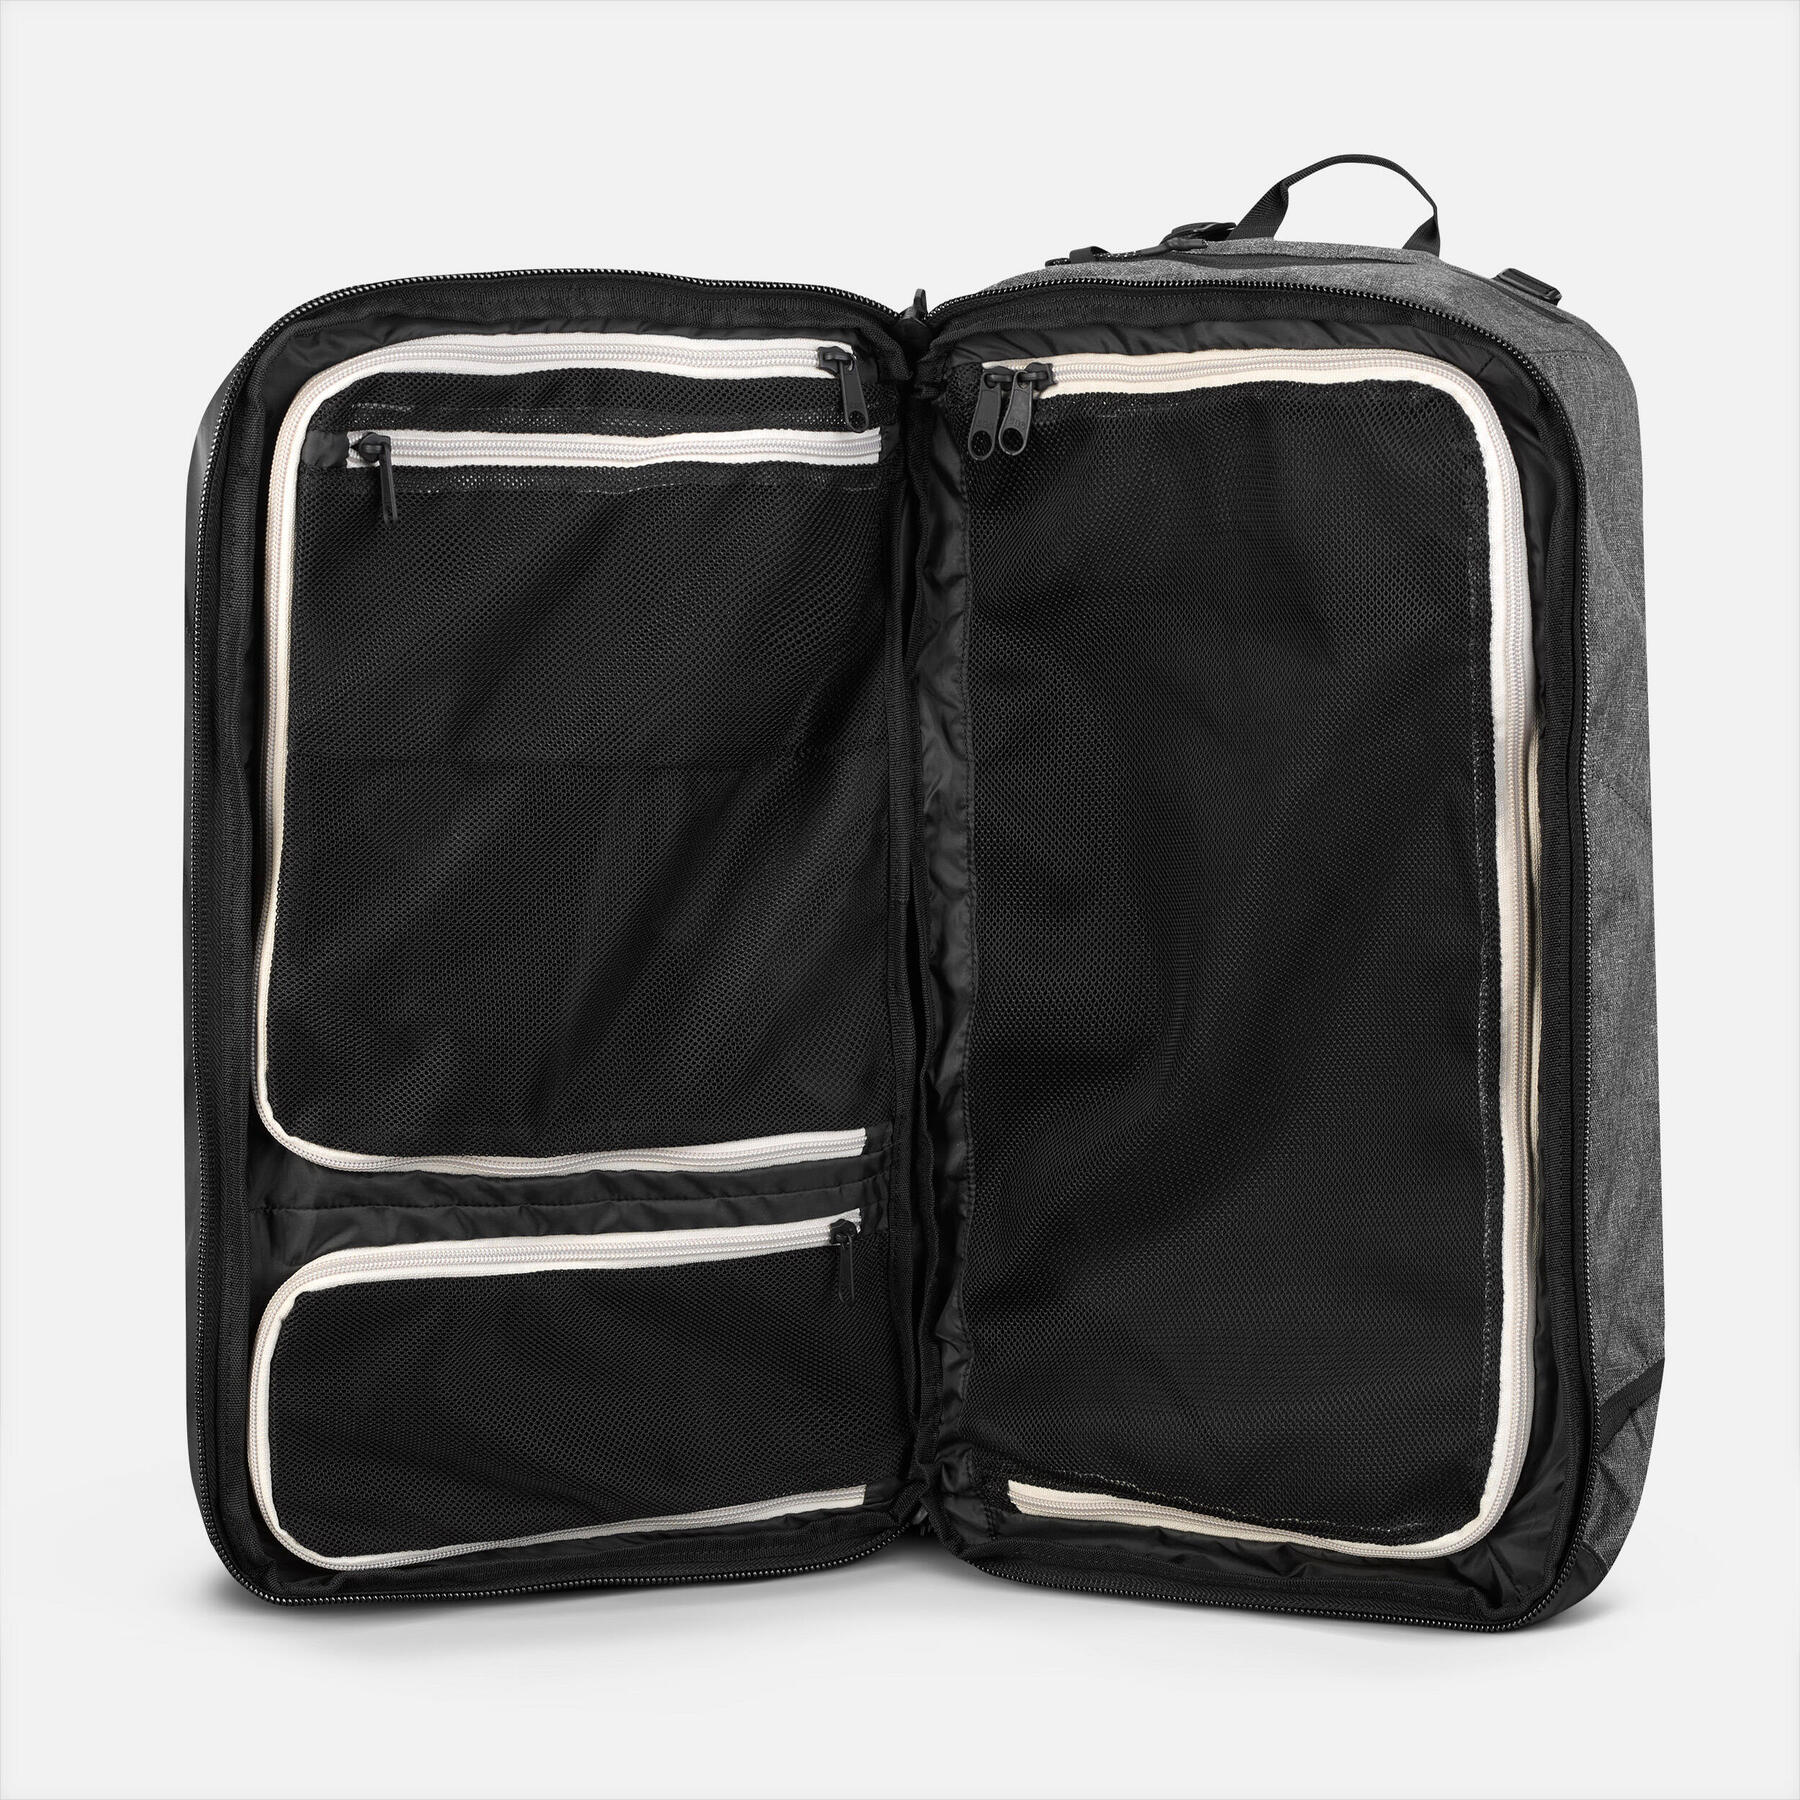 Comment choisir le meilleur sac à dos voyage cabine ?